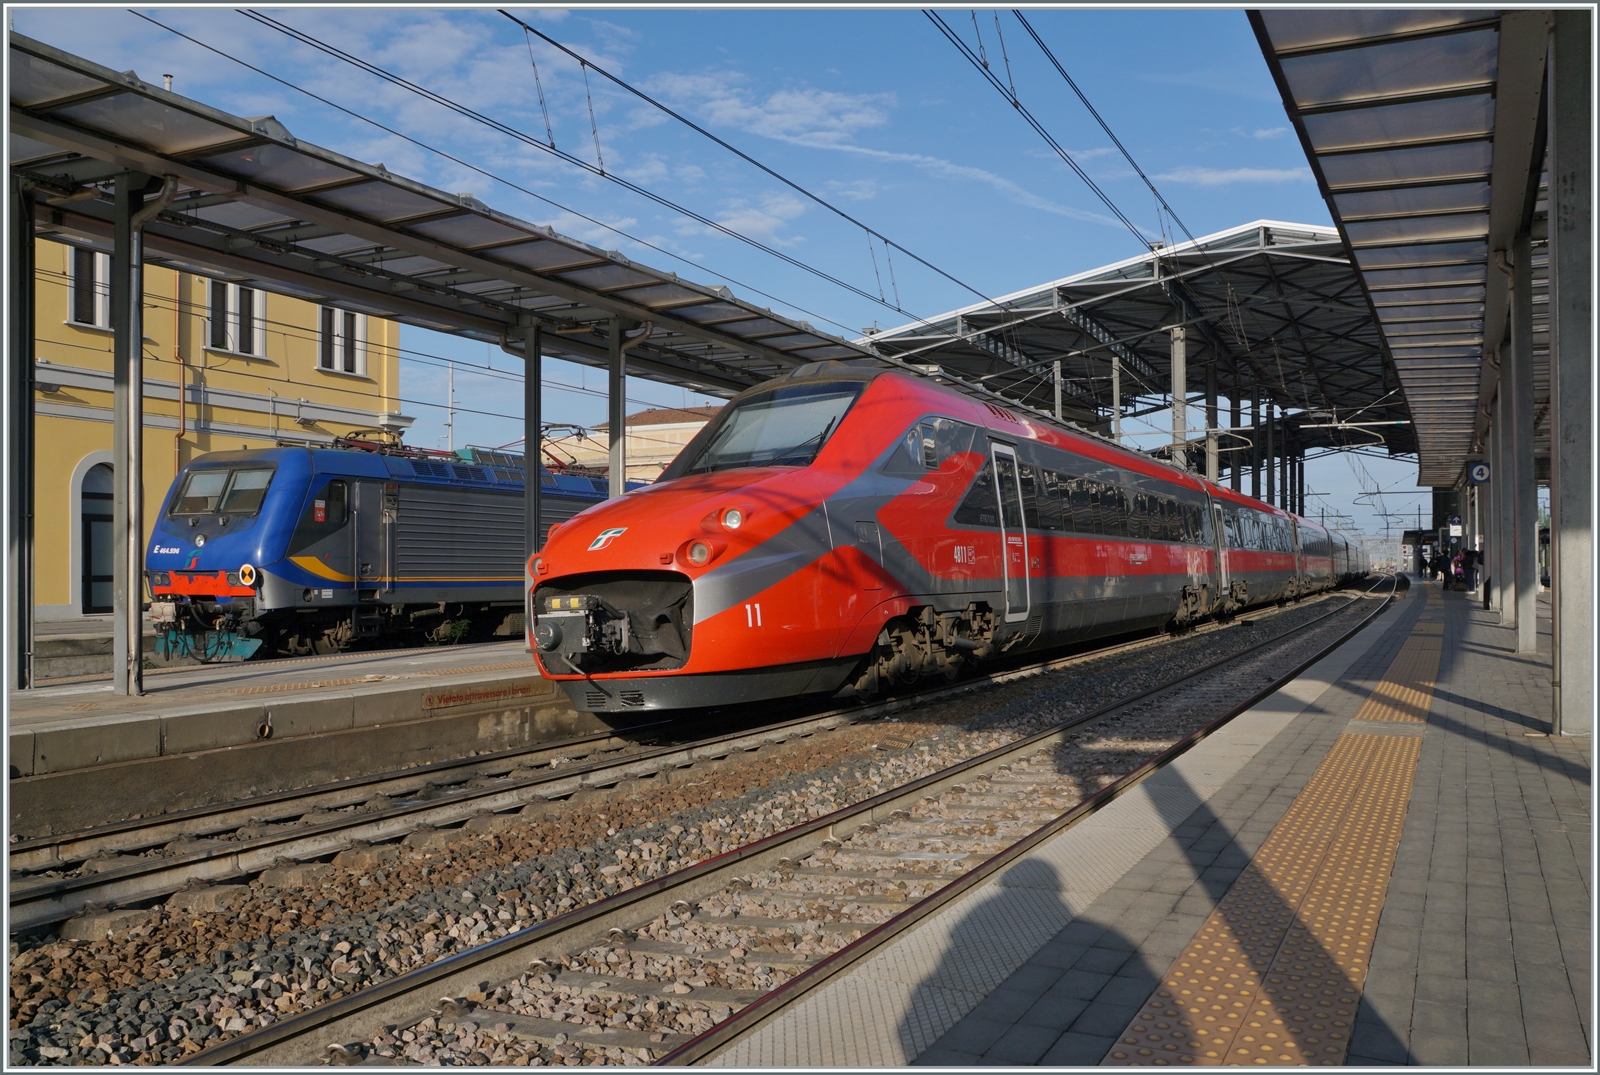 Der FS Trenitalia ETR 700 011 (ex Fyra) ist als Frecciarossa 8802 von Ancona nach Milano unterwegs und hat den Bahnhof von Parma erreicht. Links im Bild ist ein FS Trenitala Regionazug von La Spezia in Parma angekommen. 

18. April 2023